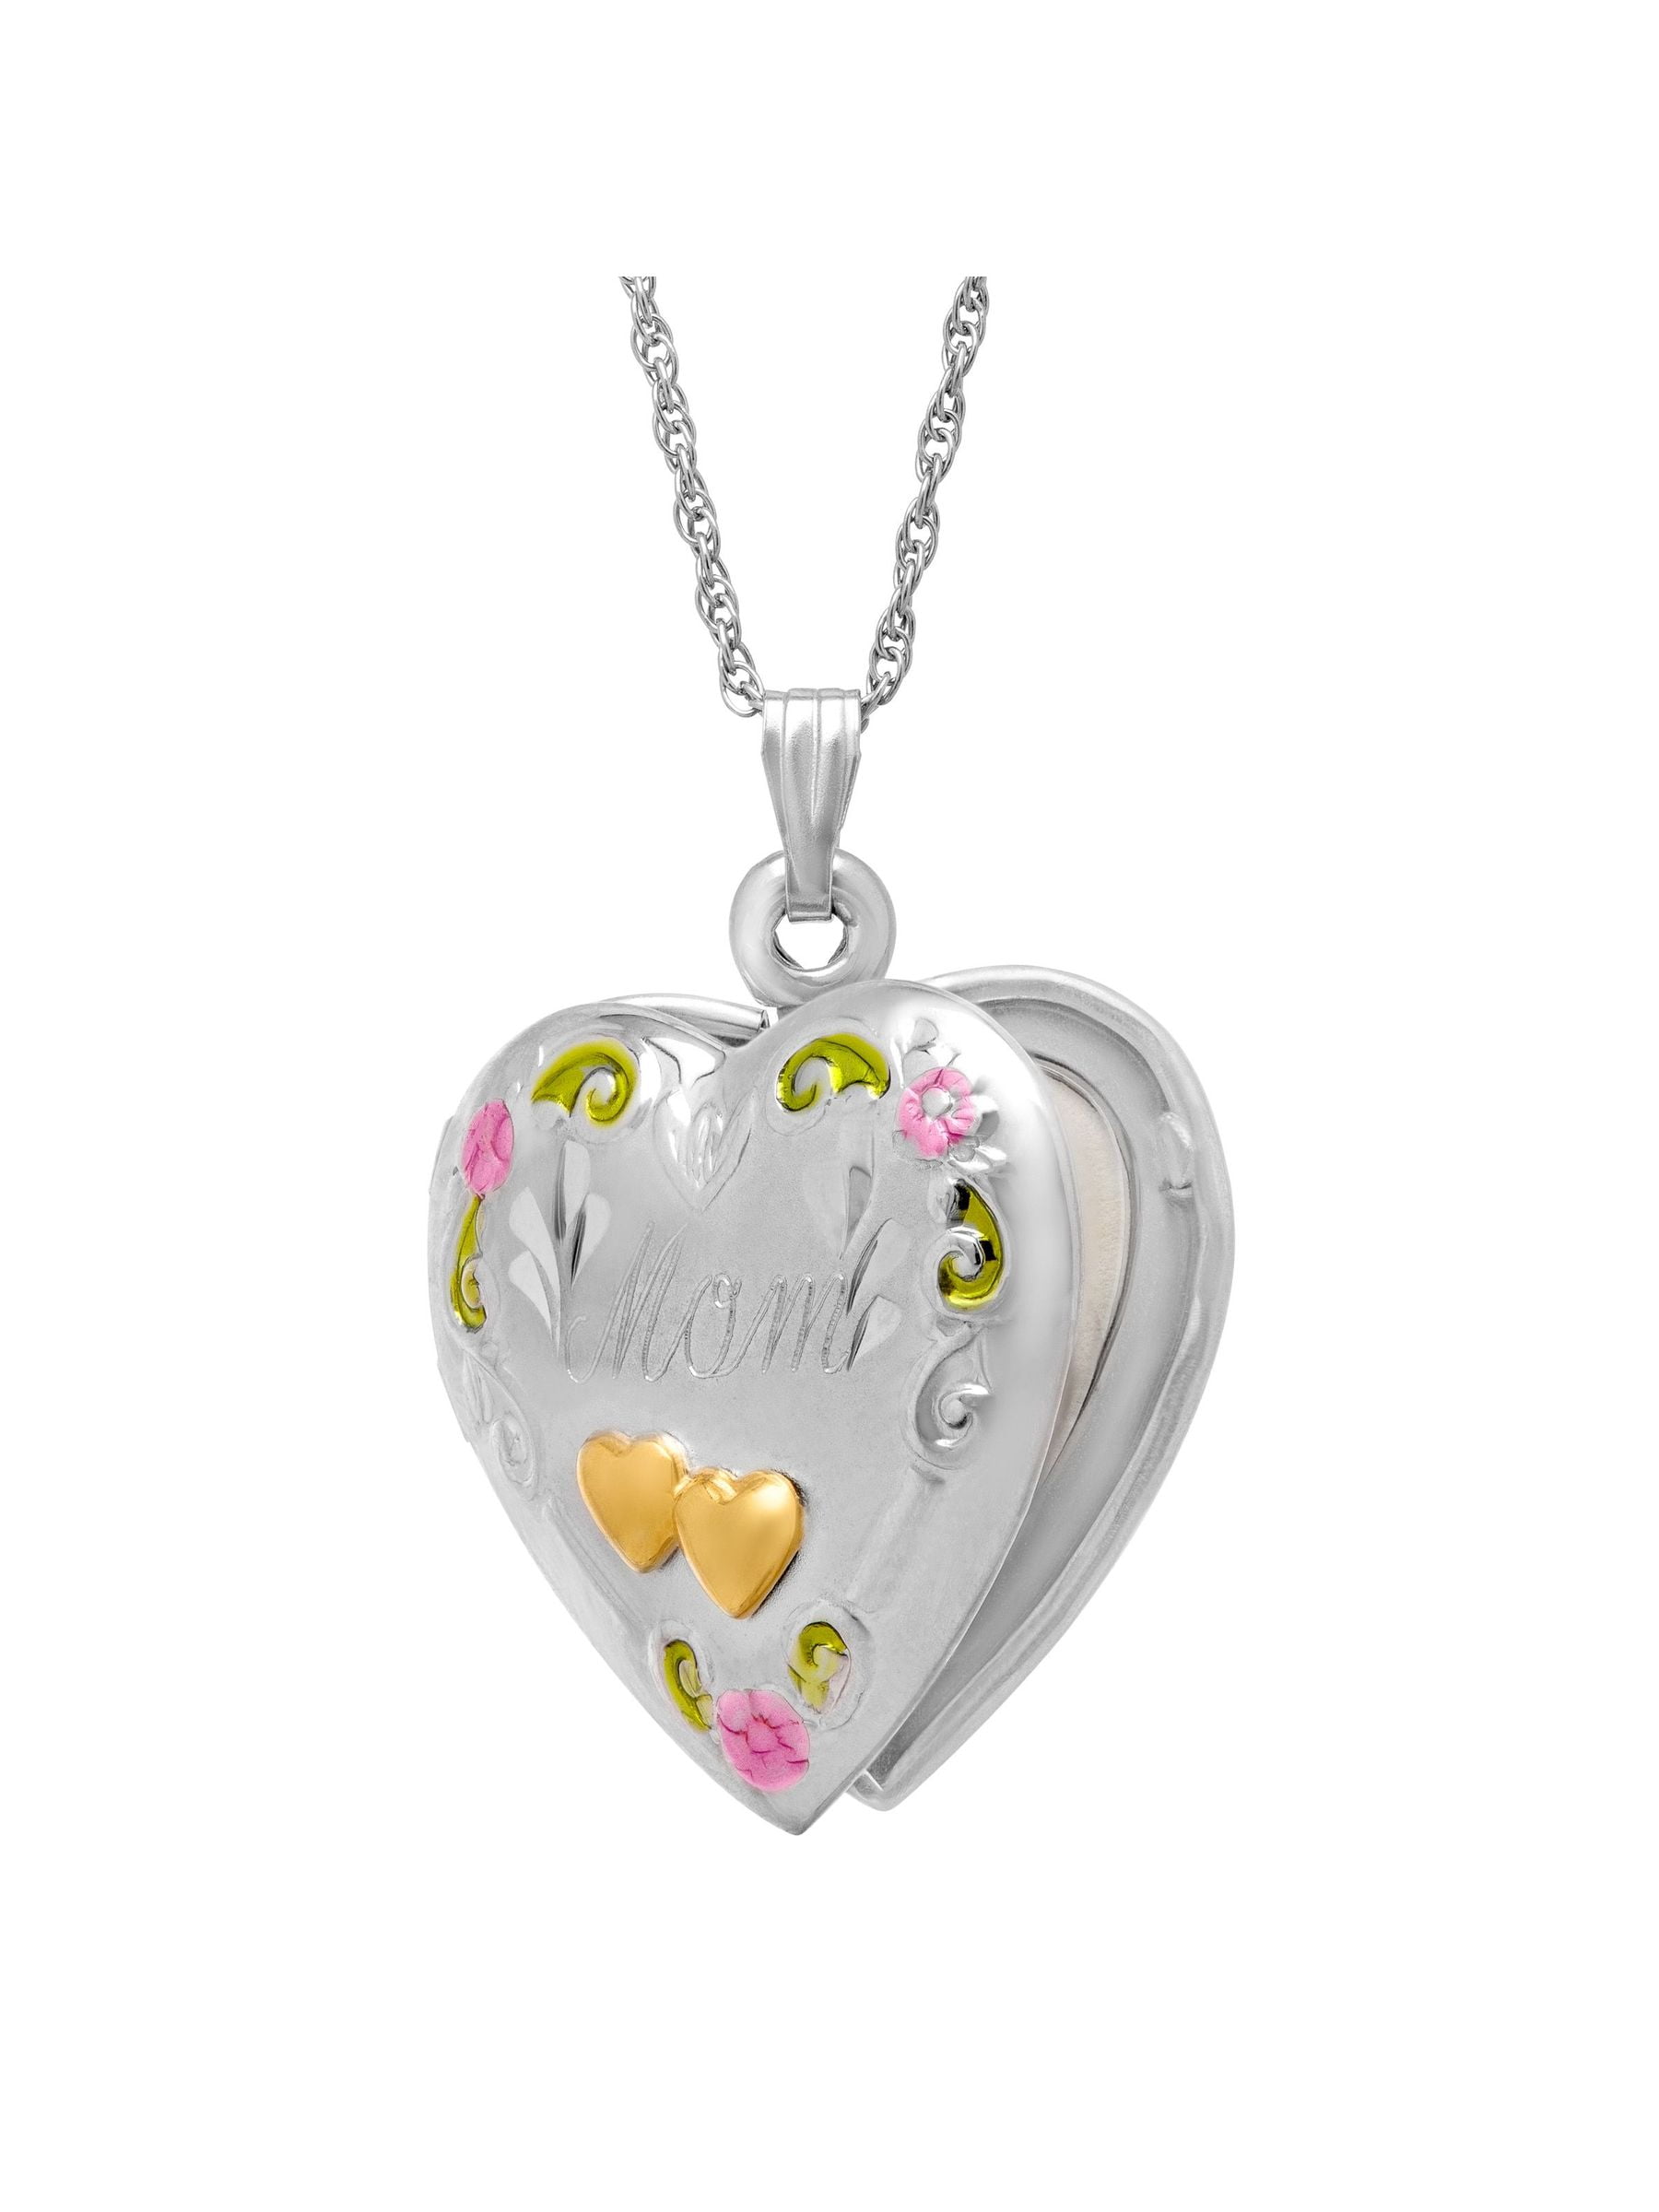 In Season Jewelry Grandma Locket Necklace Heart Photo Family Love 19